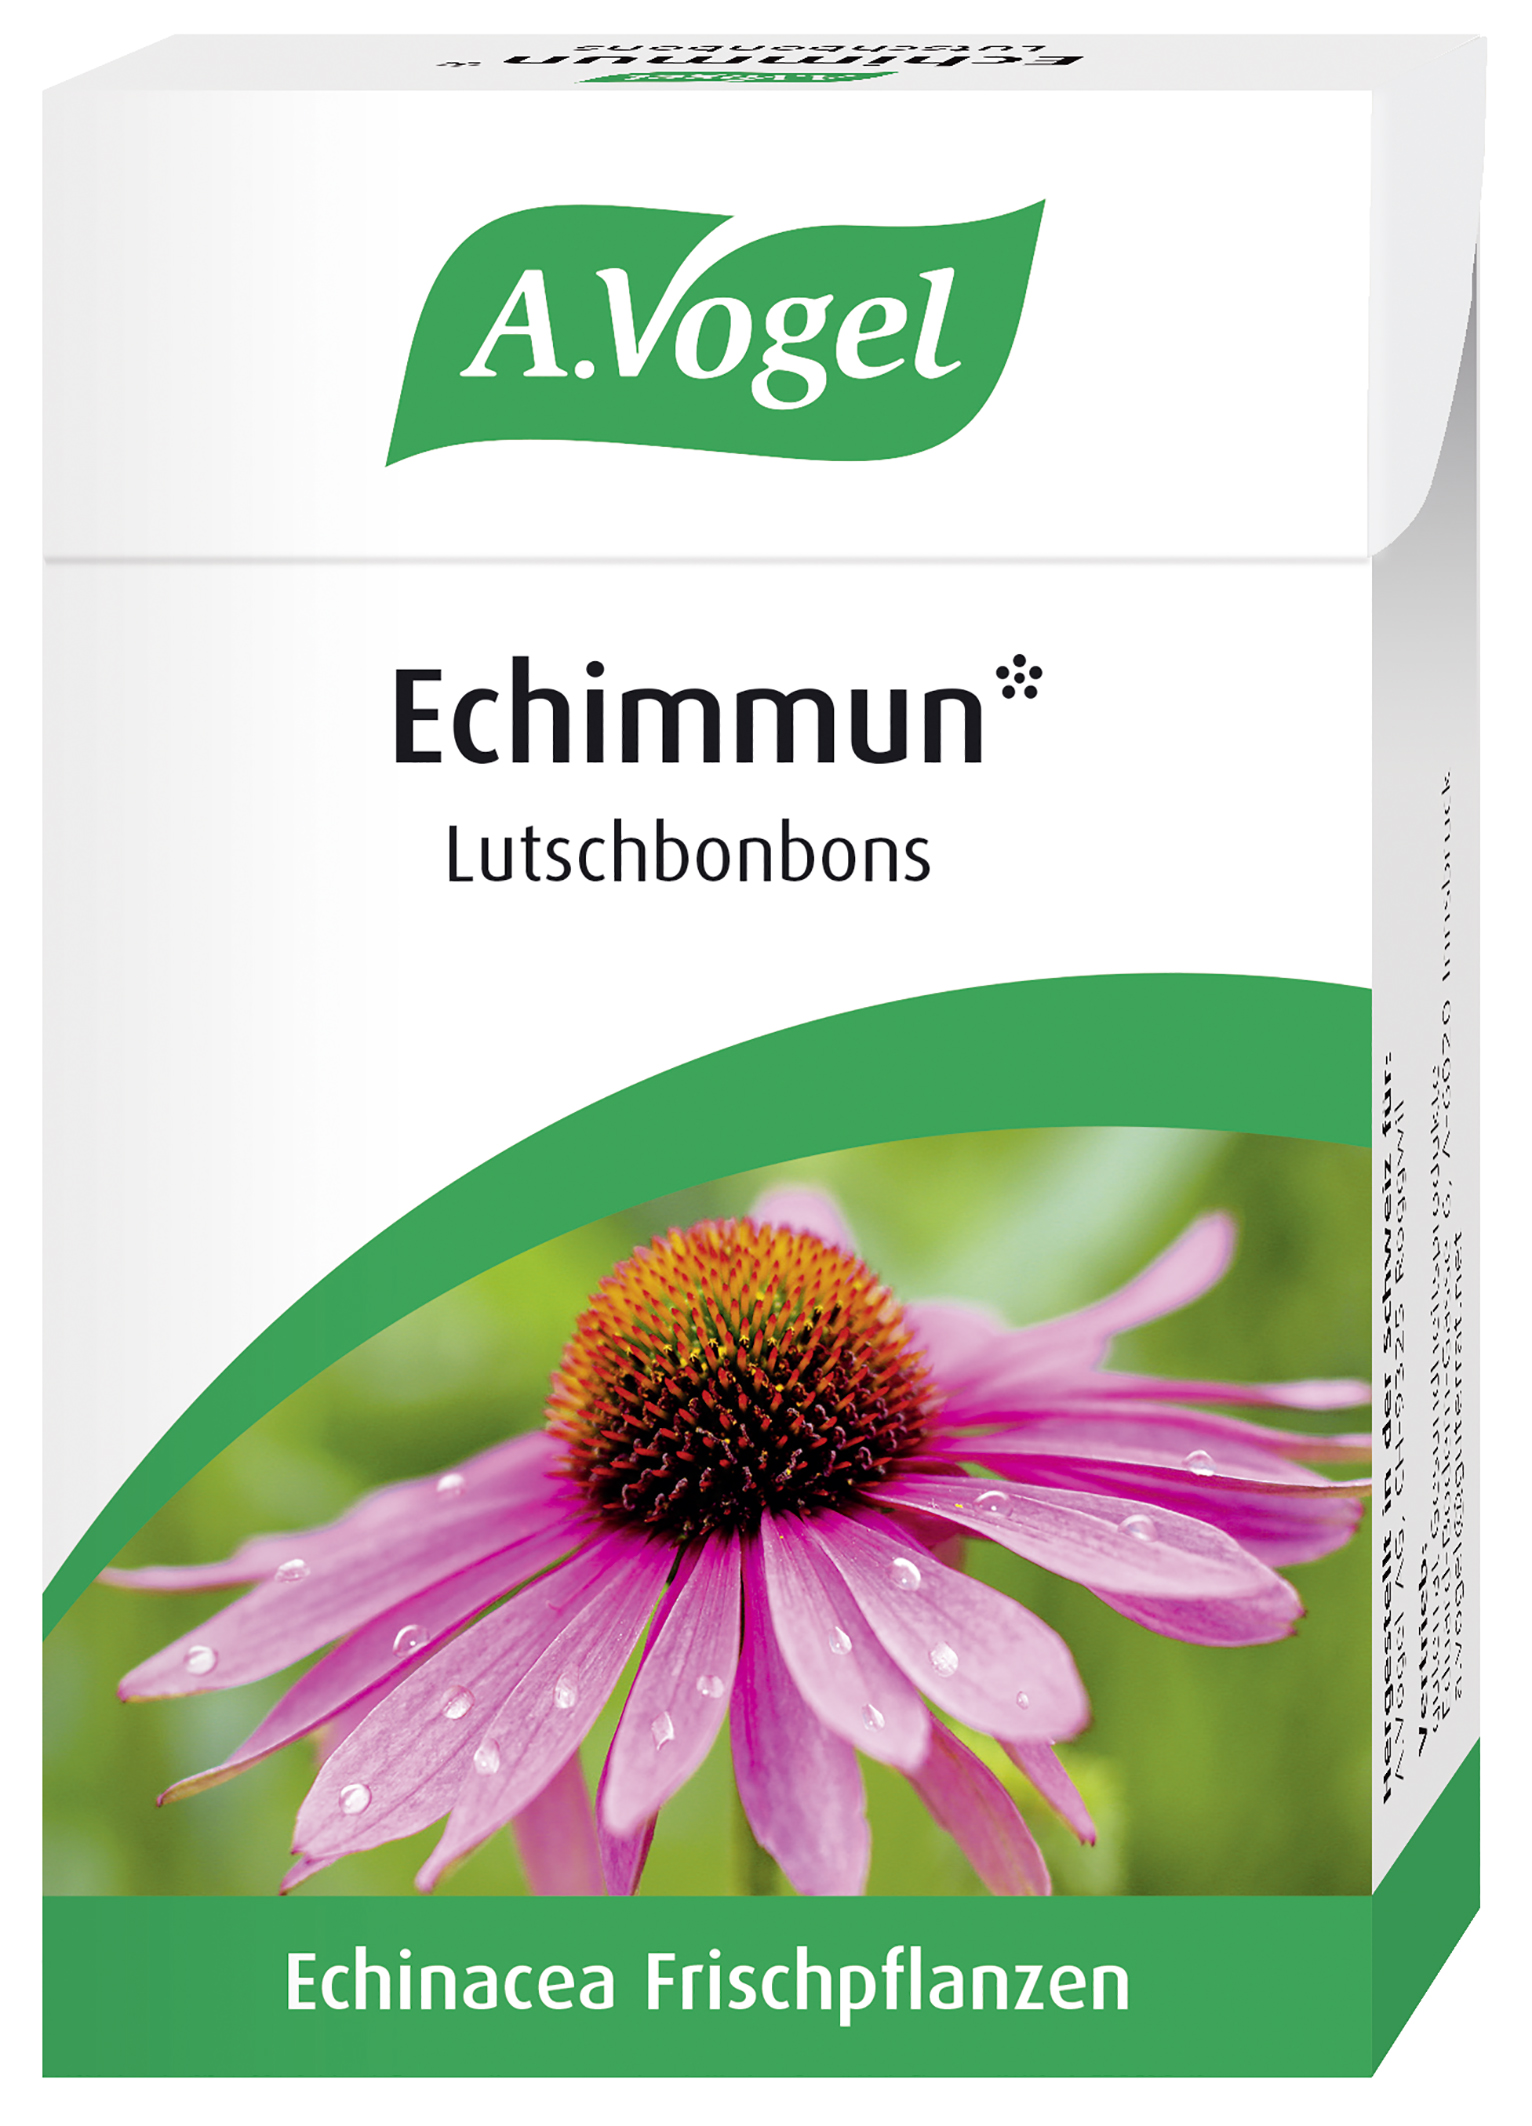 A.Vogel Echimmun* Lutschbonbons